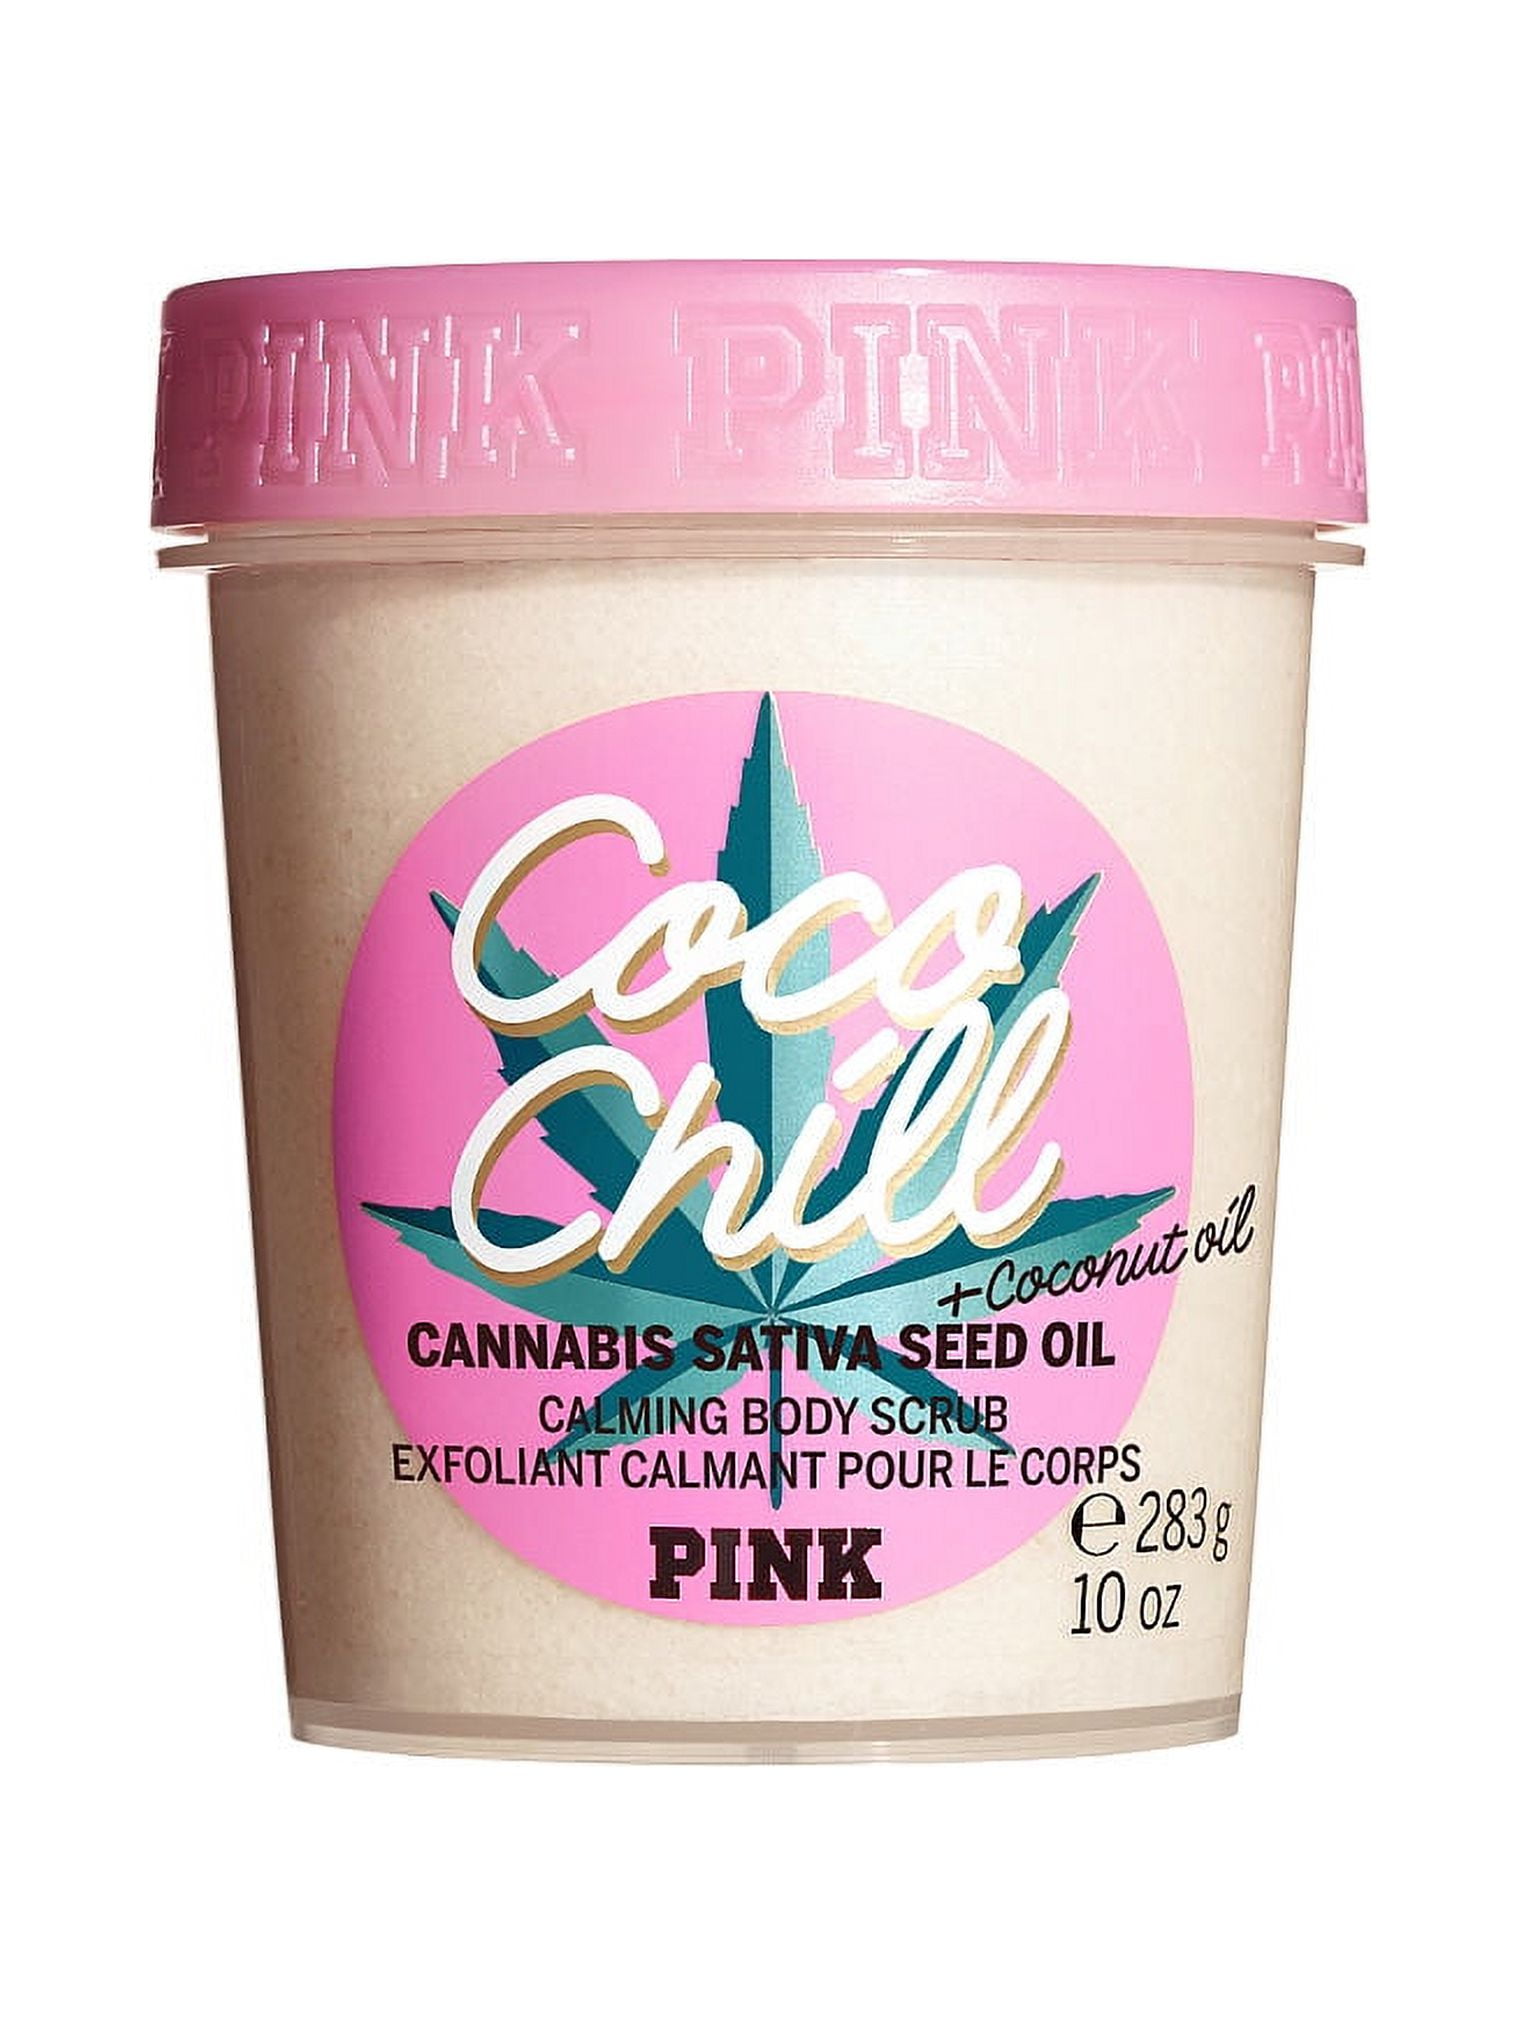 PINK/Victoria's Secret Coco Chill Calming Body Scrub 10oz